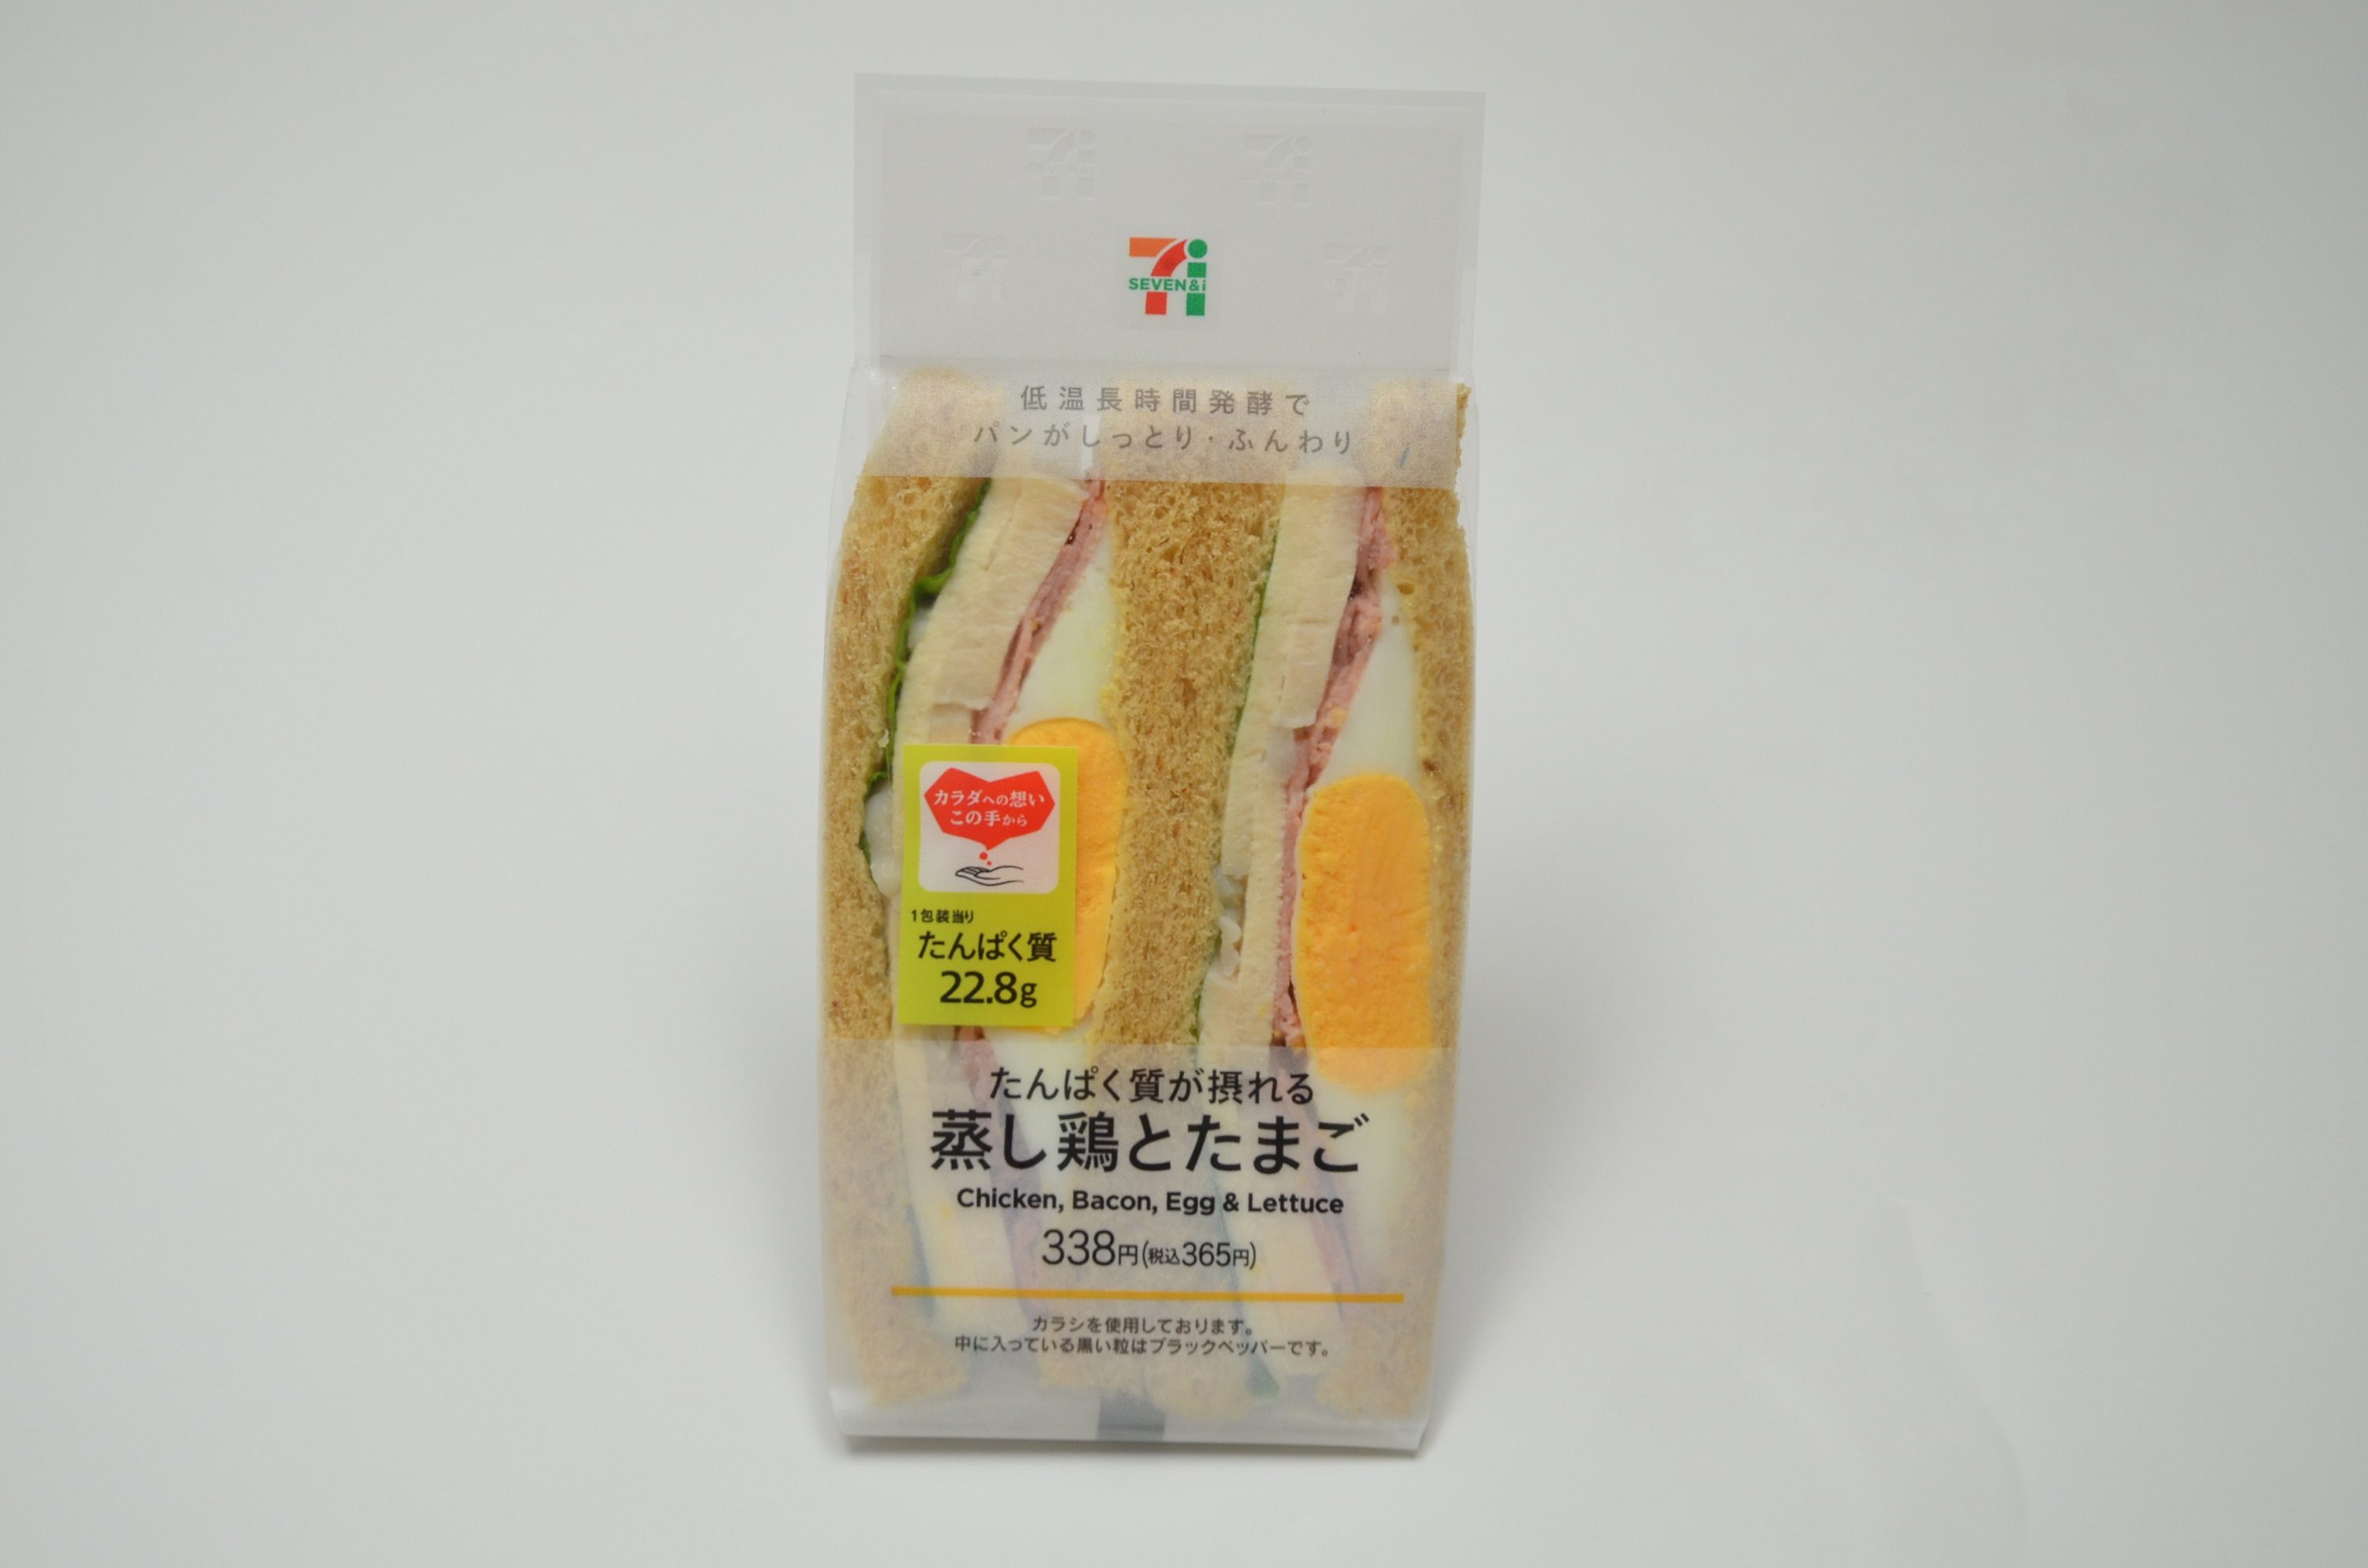 セブンイレブン 新作サンドイッチ ロールパンが健康的でおいしそう ニュースサイトしらべぇ